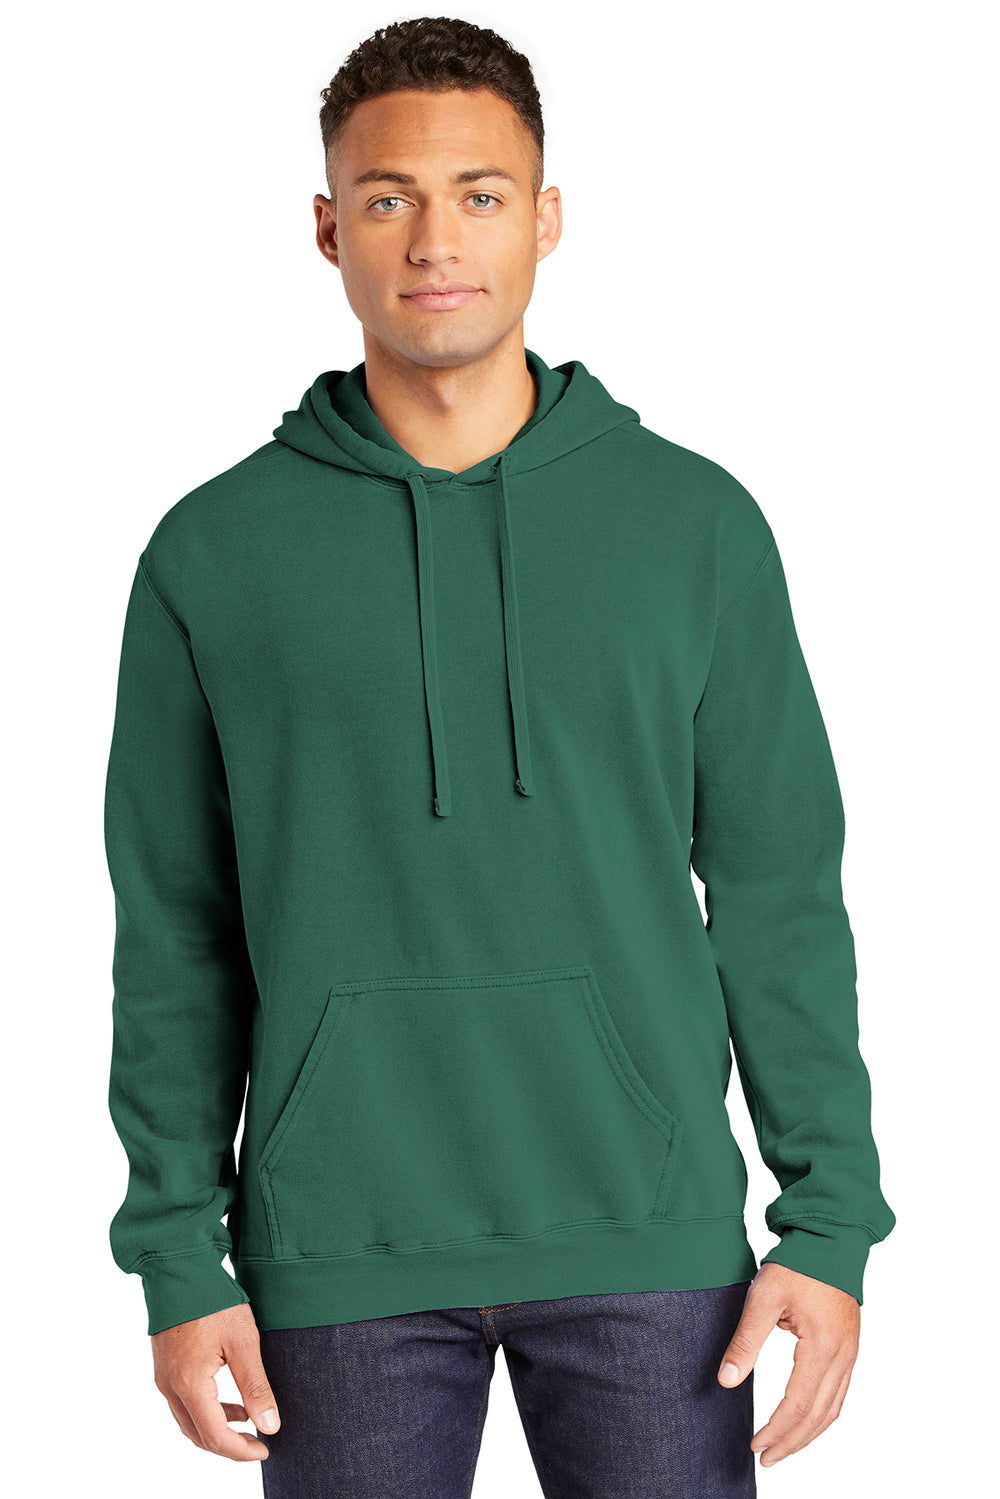 Comfort Colors 1567 Mens Light Green Hooded — BigTopShirtShop.com